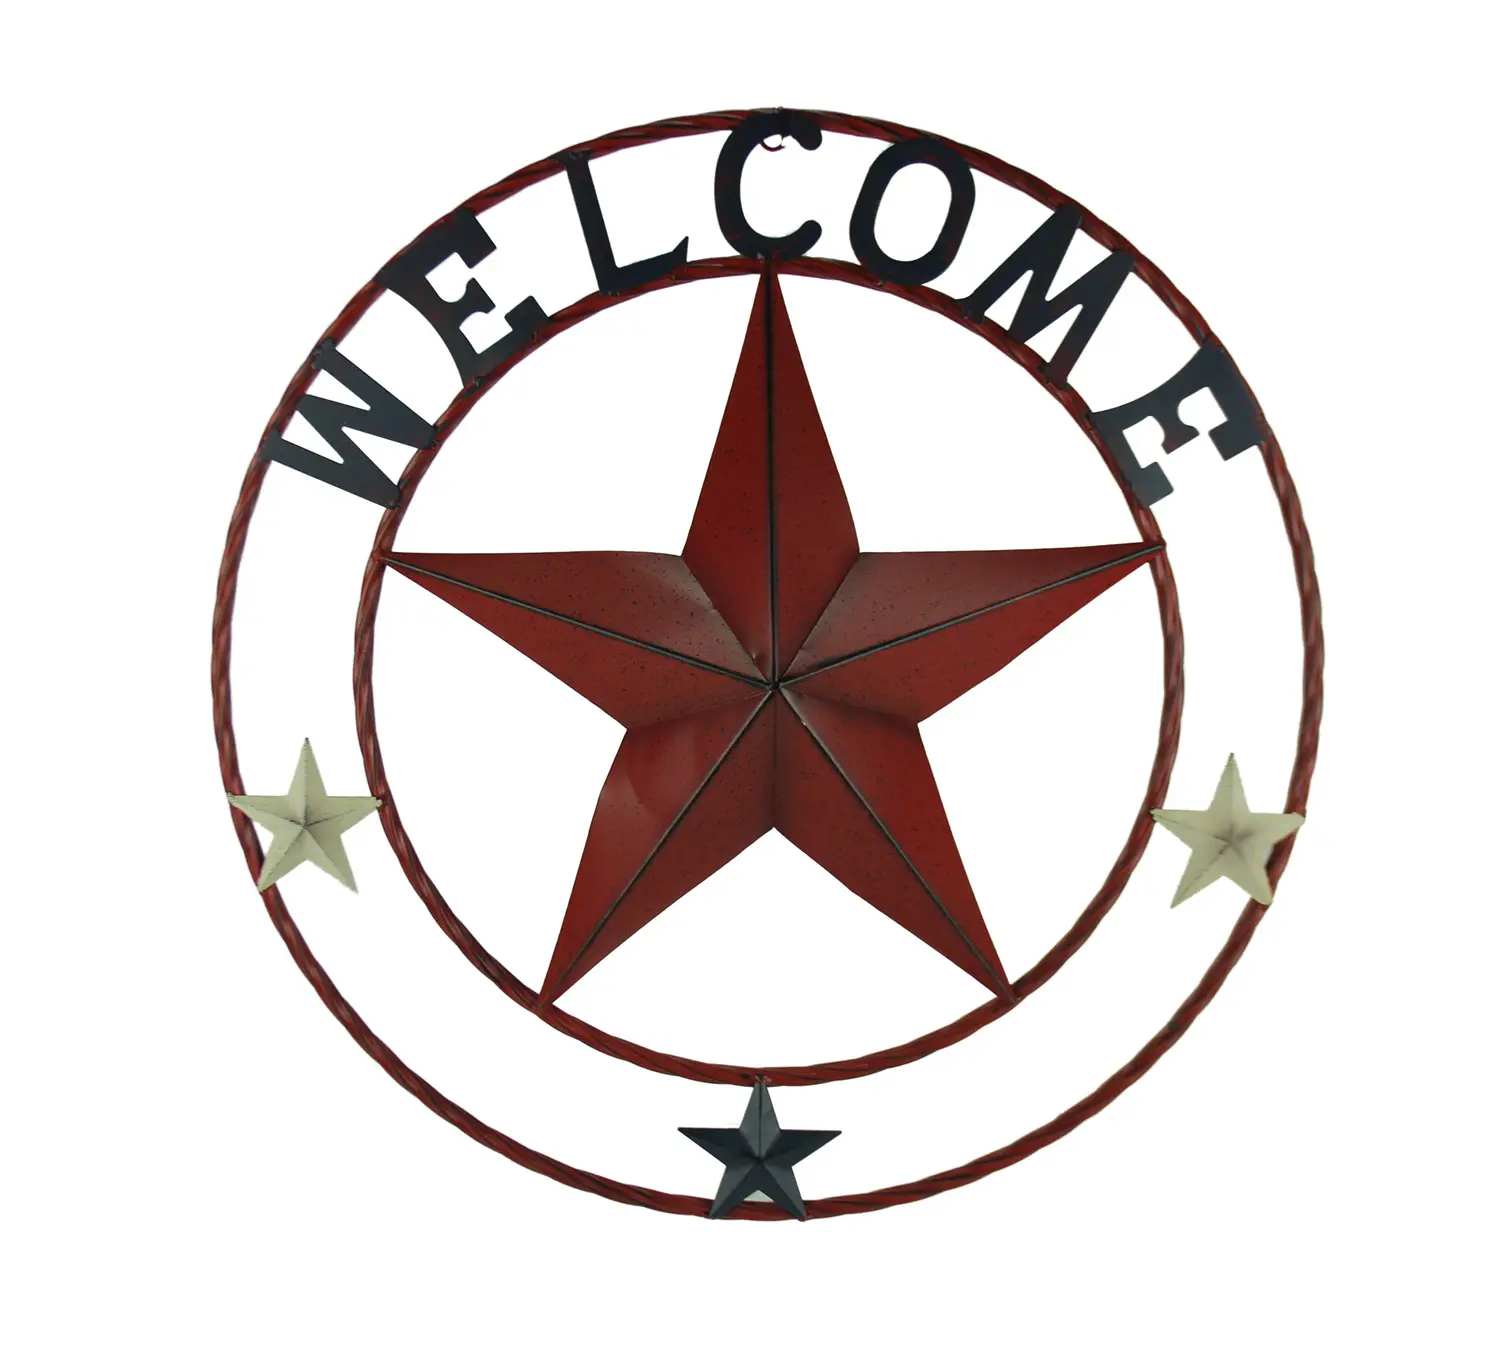 ديكور على شكل دائرة على شكل نجوم من تكساس, ديكور حائطي عتيق مقاس 24 بوصة